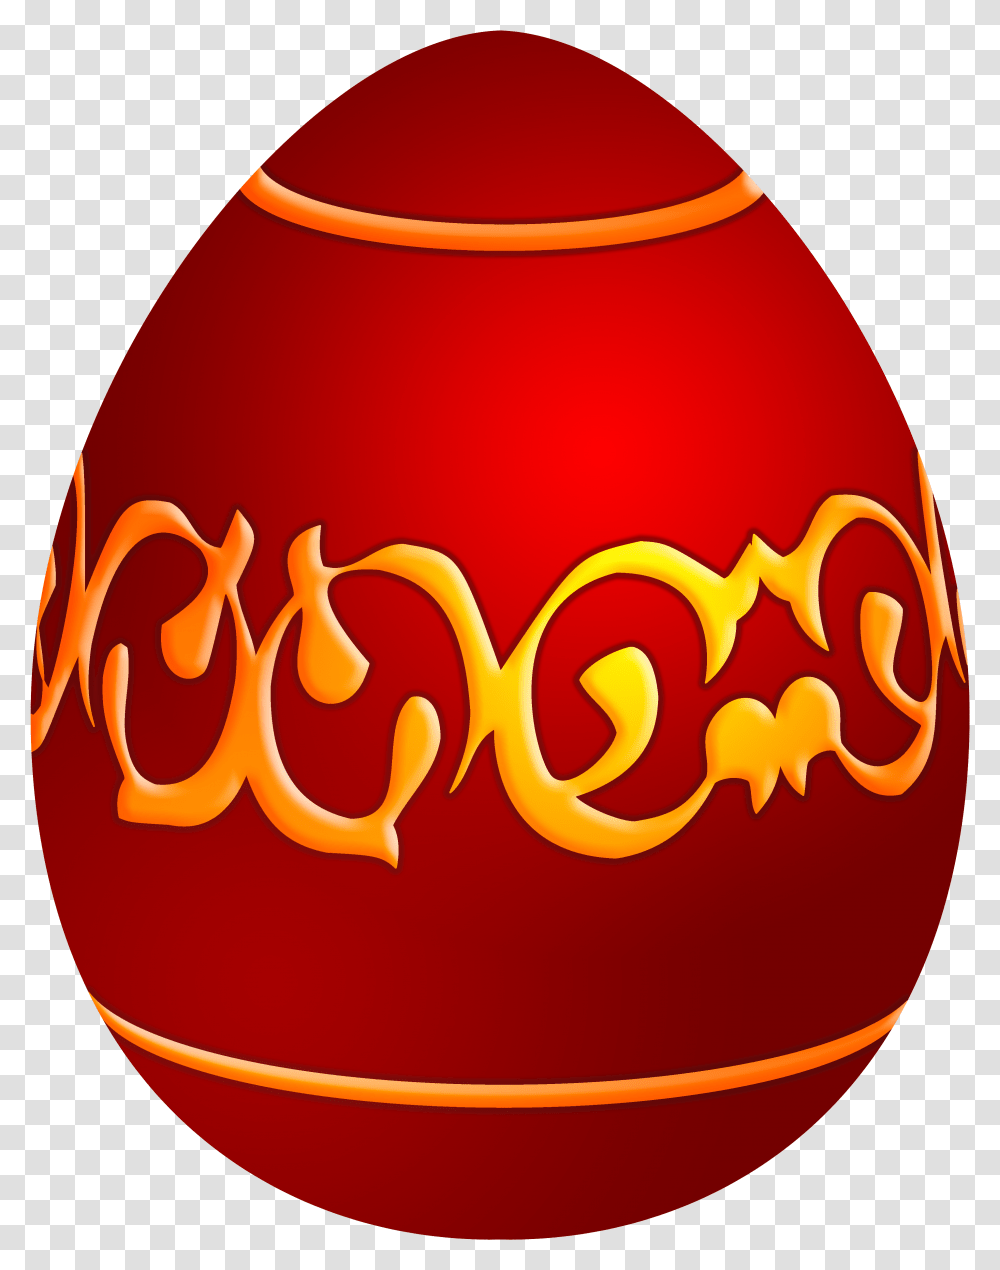 Easter Decorative Red Egg Easter Egg, Beverage, Alcohol, Ketchup Transparent Png